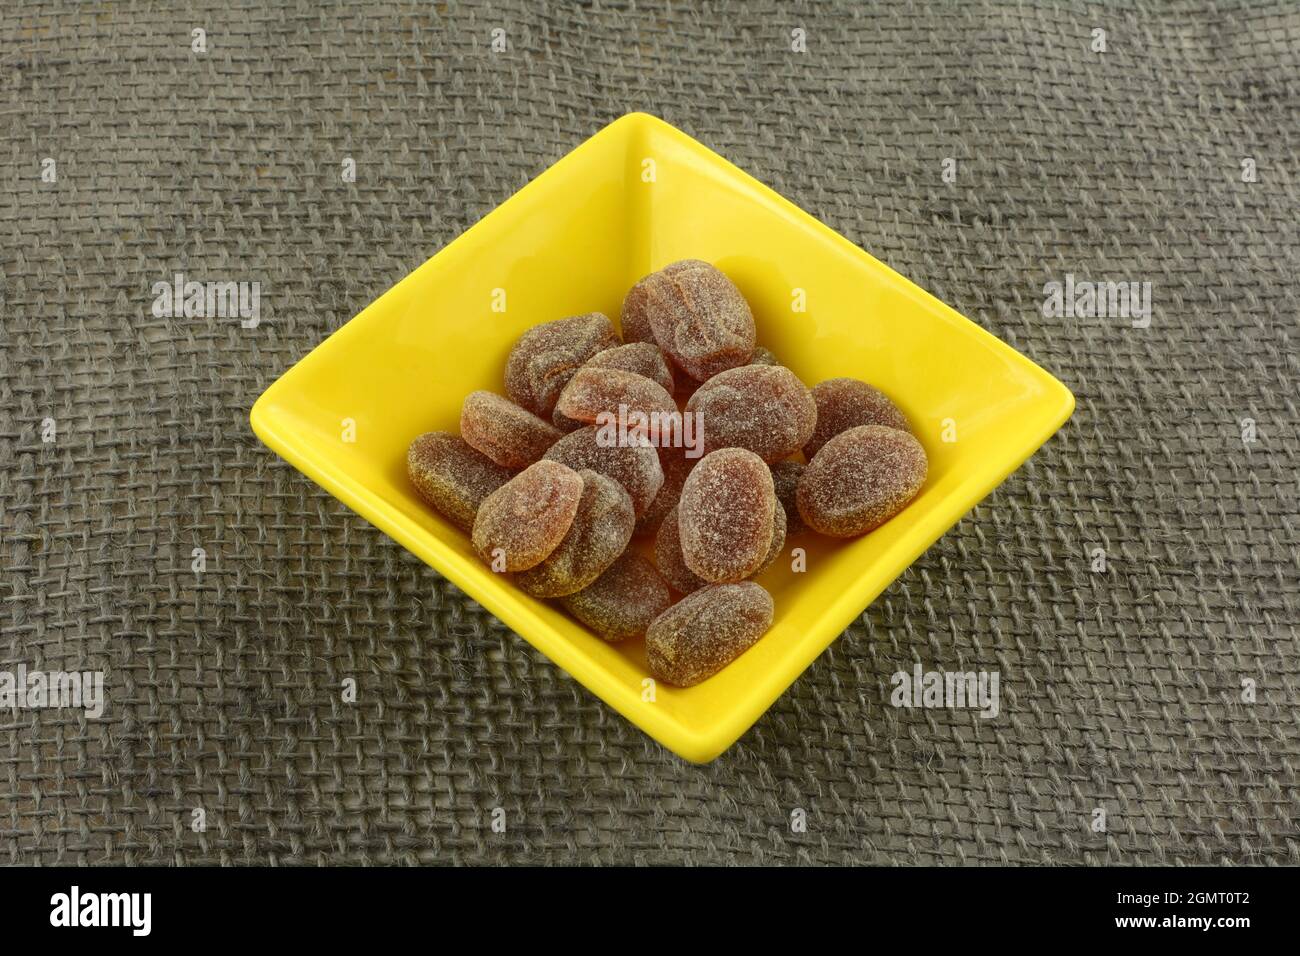 Pastiglie di bacche miste in caramelle gialle su tela grigia Foto Stock